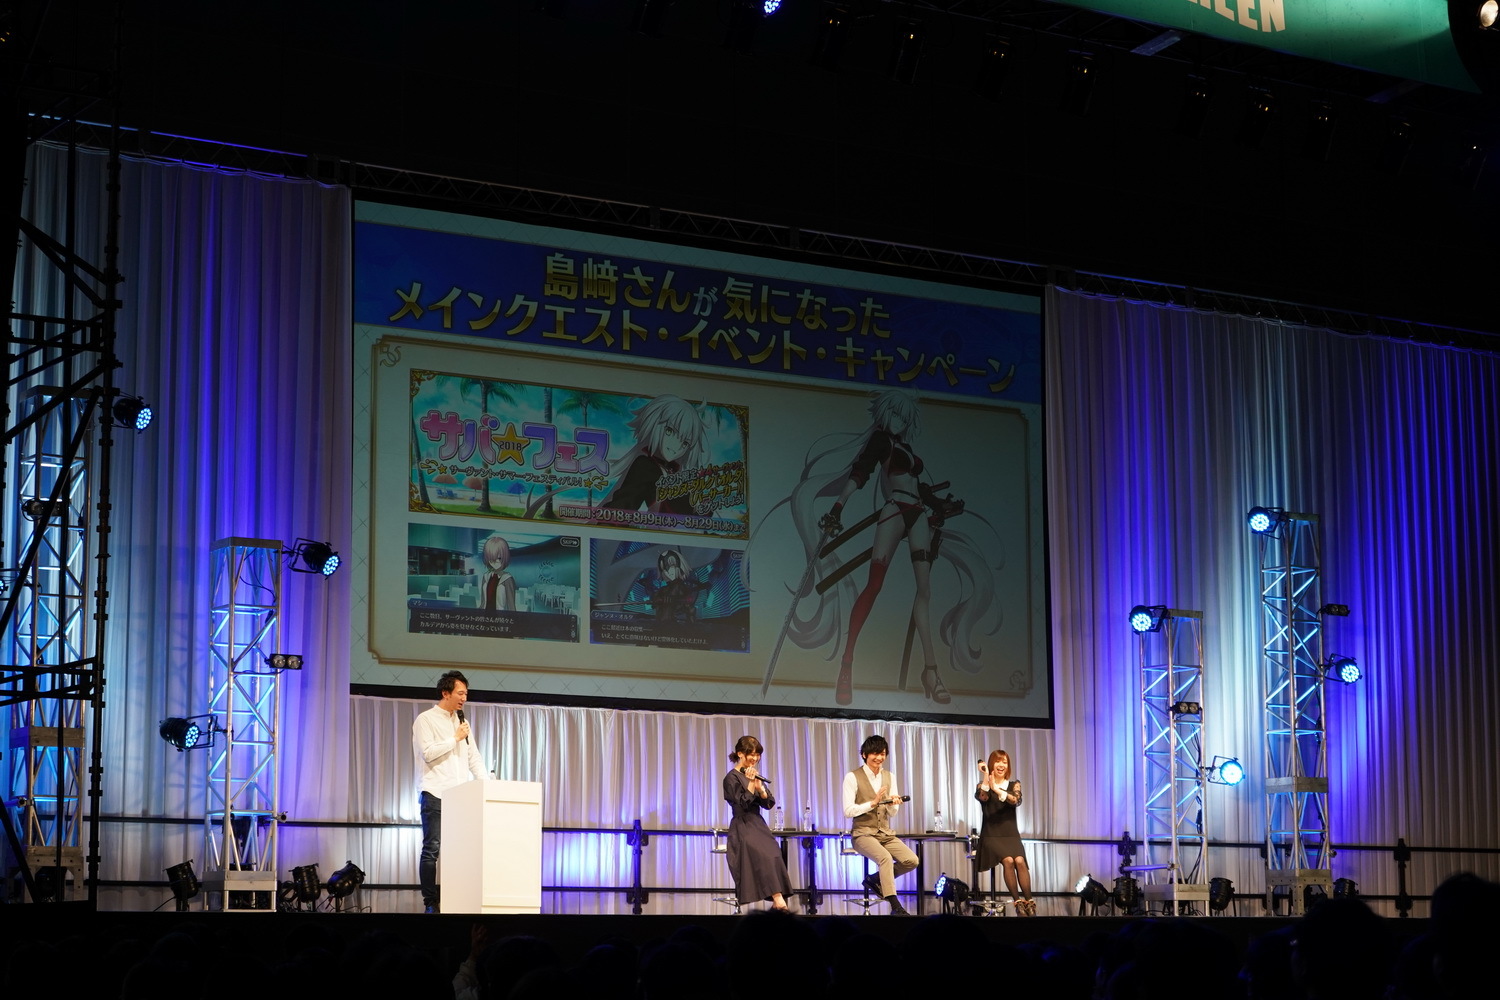 最新イベントの舞台は迷宮と化した 大奥 Fate Grand Order スペシャルステージ In Animejapan 19レポート Spice エンタメ特化型情報メディア スパイス